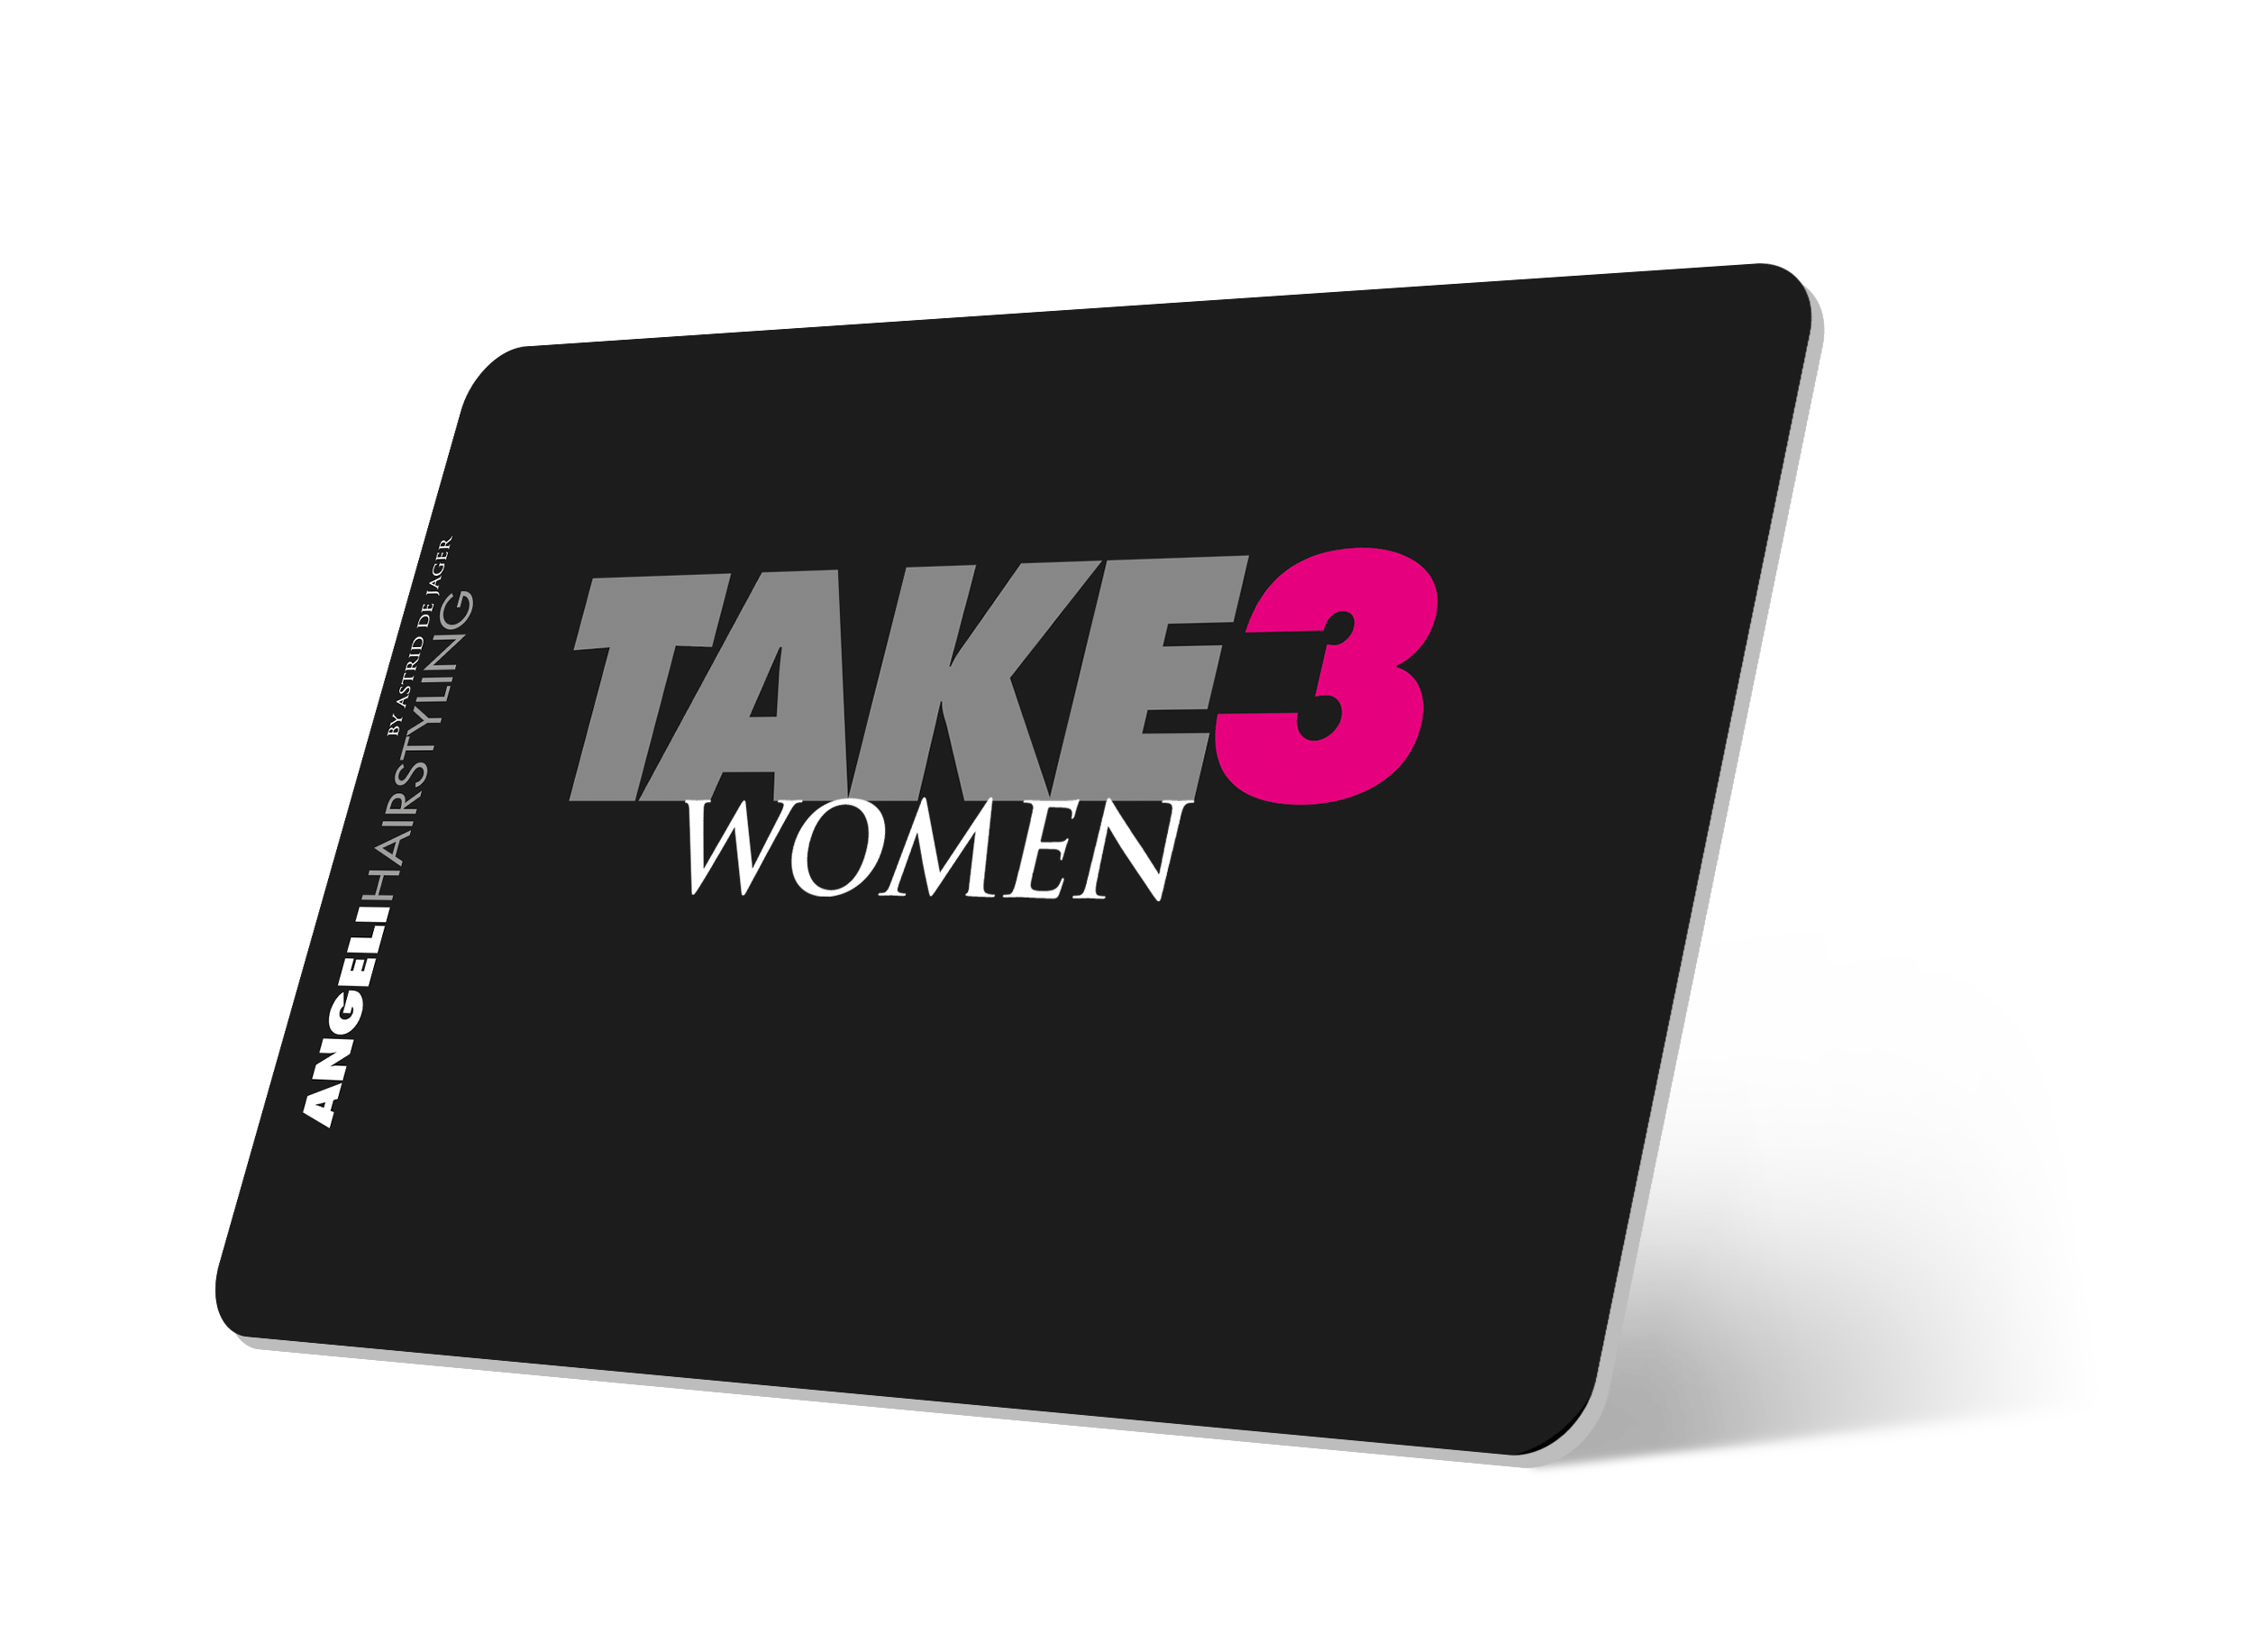 Take3! Women